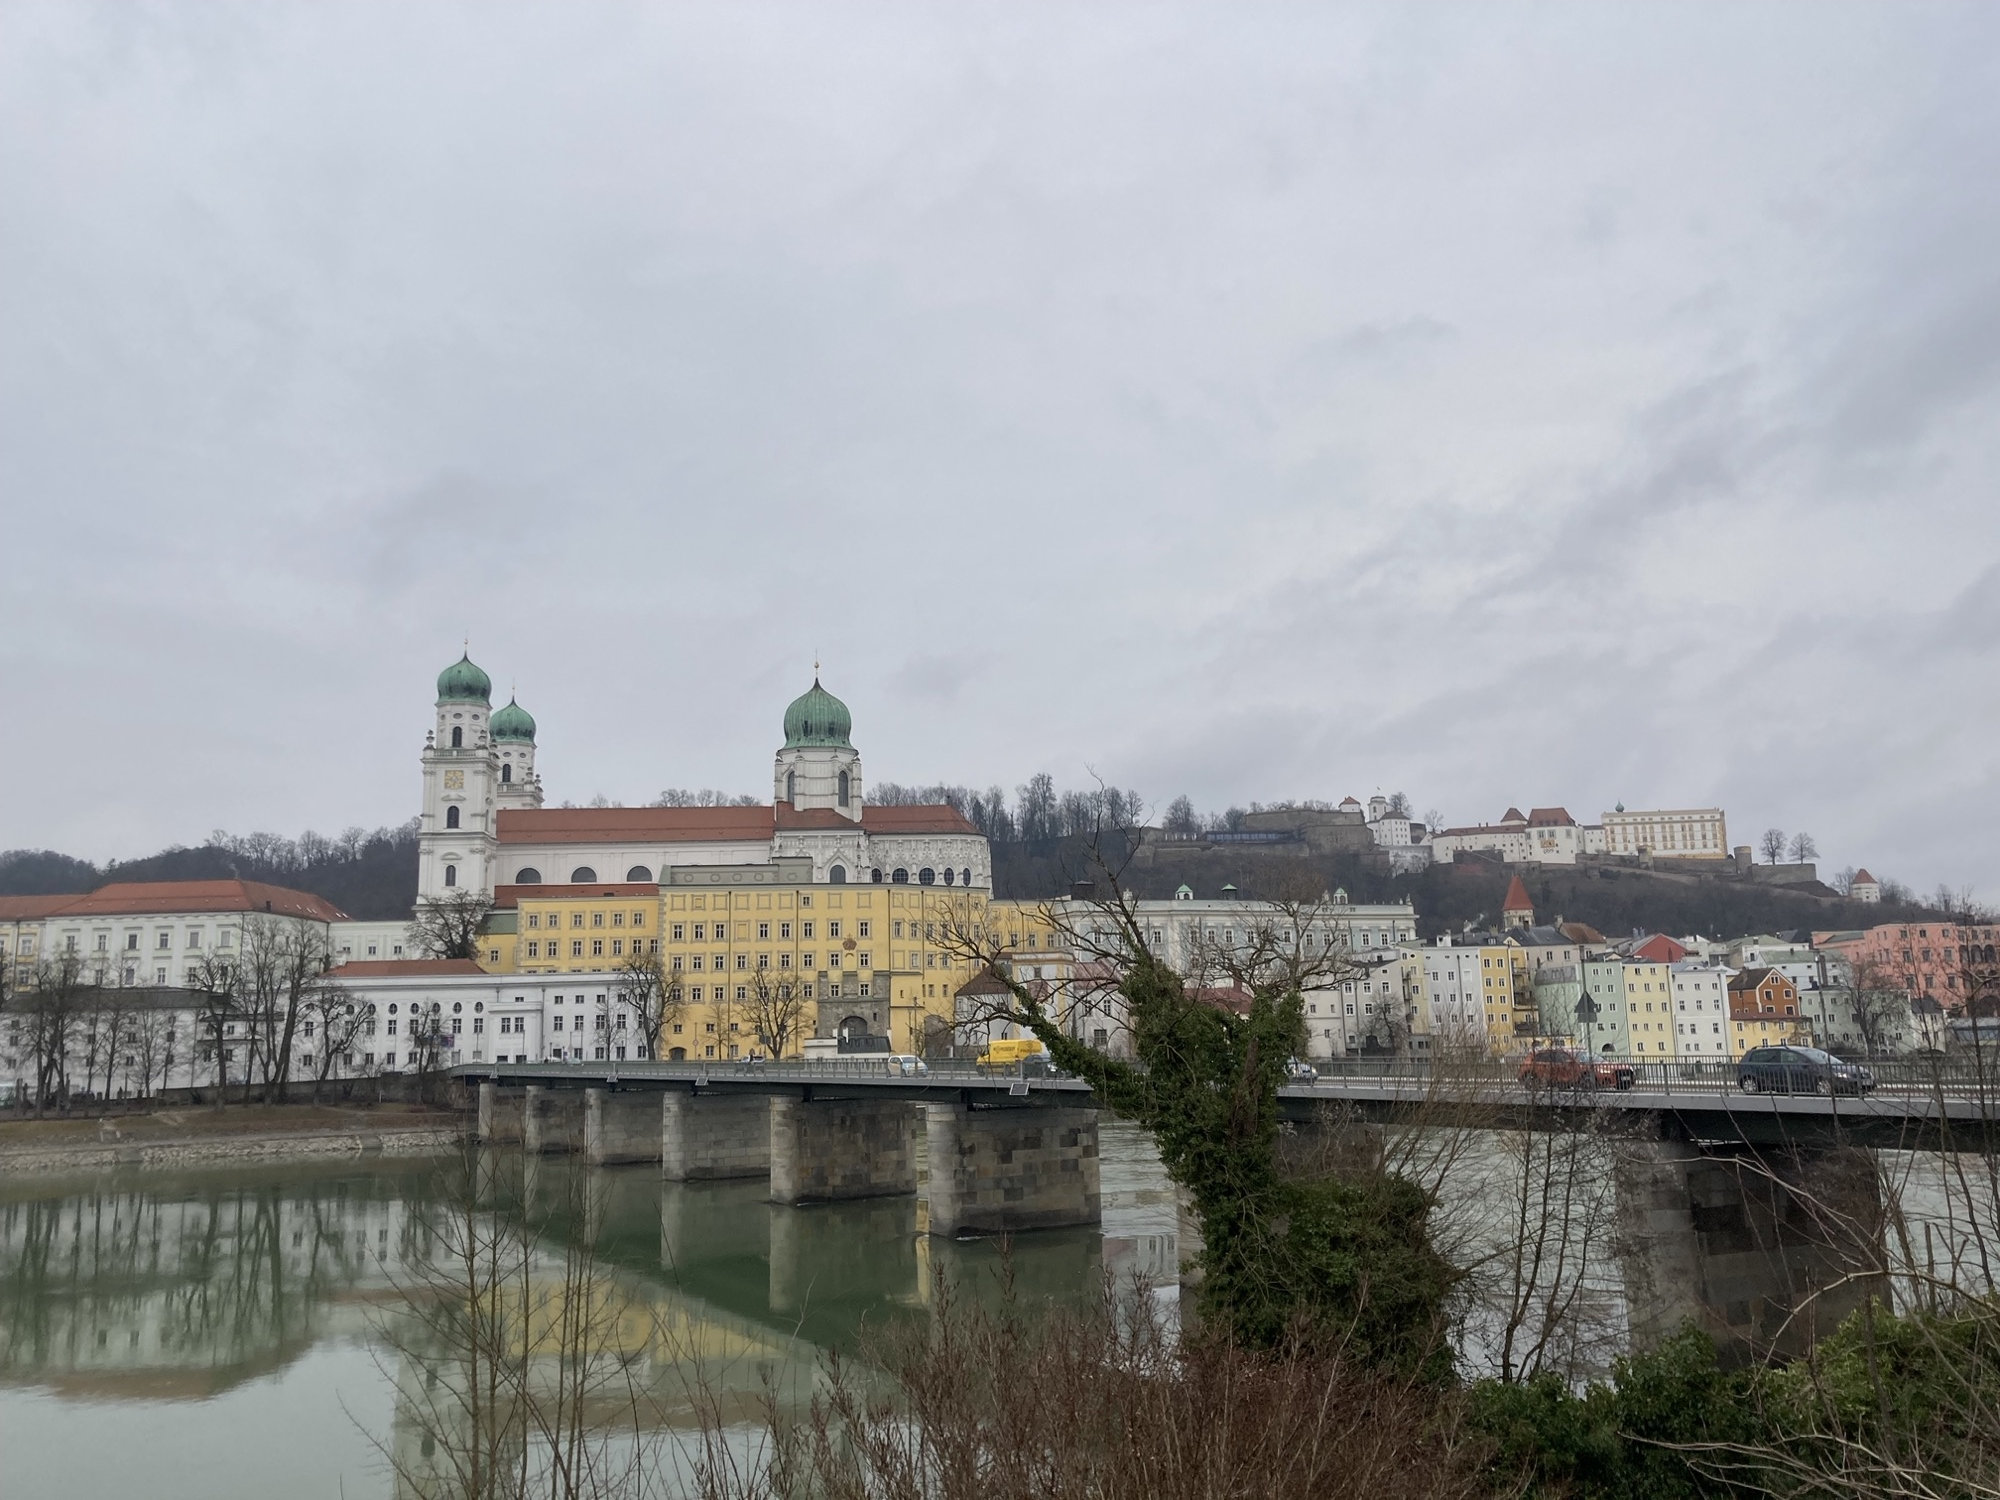 Ausblick auf die Altstadt von Passau vom südlichen Inn-Ufer, im Vordergrund ruht die Marienbrücke auf mehreren massiven Steinsäulen, im Hintergrund sind die drei Kuppeln des Dom St. Stephan zu sehen